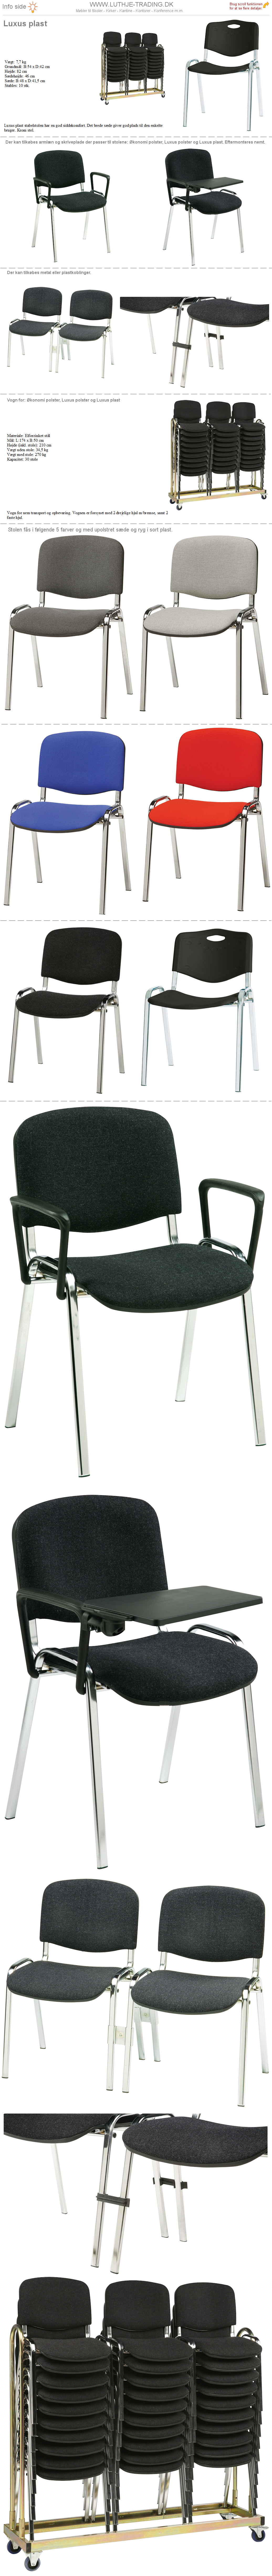 Stabelstole Luxus plast, med plast sæde og ryg